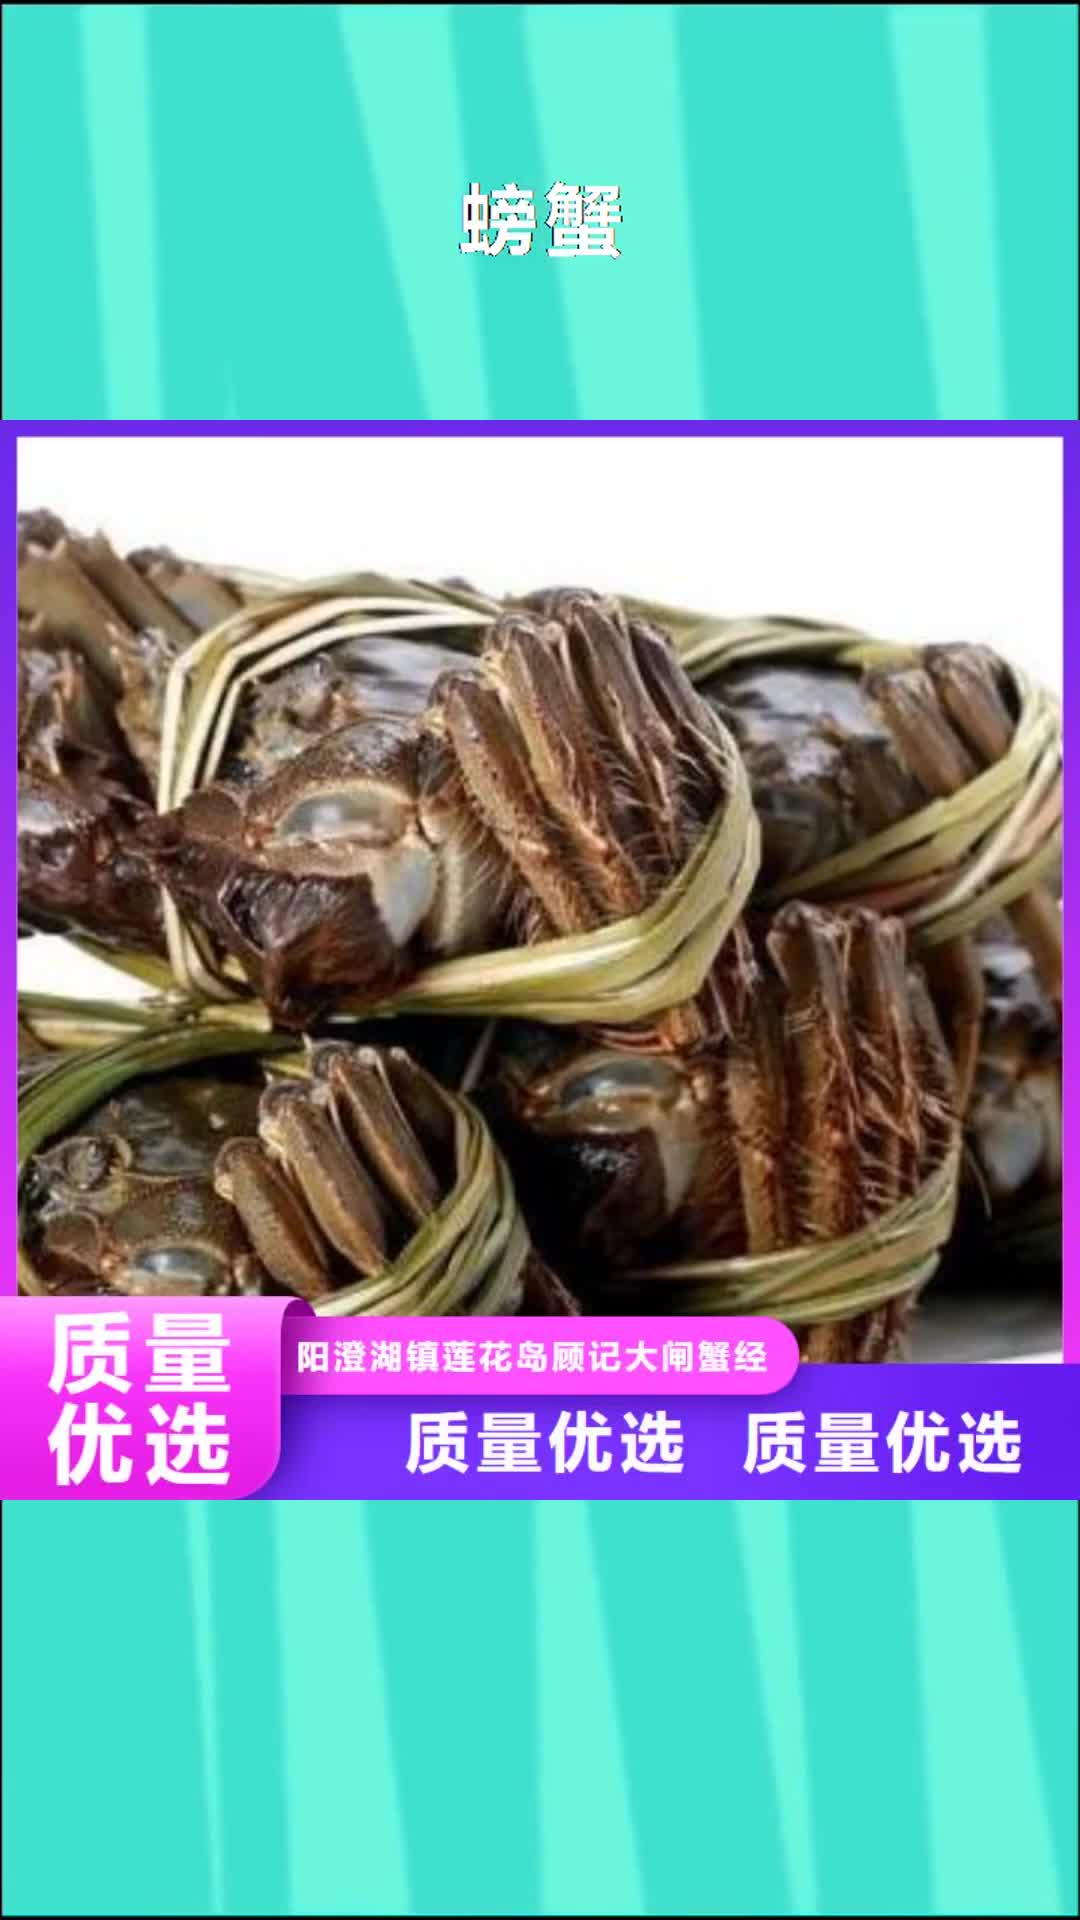 烟台 螃蟹,【阳澄湖大闸蟹】今日价格